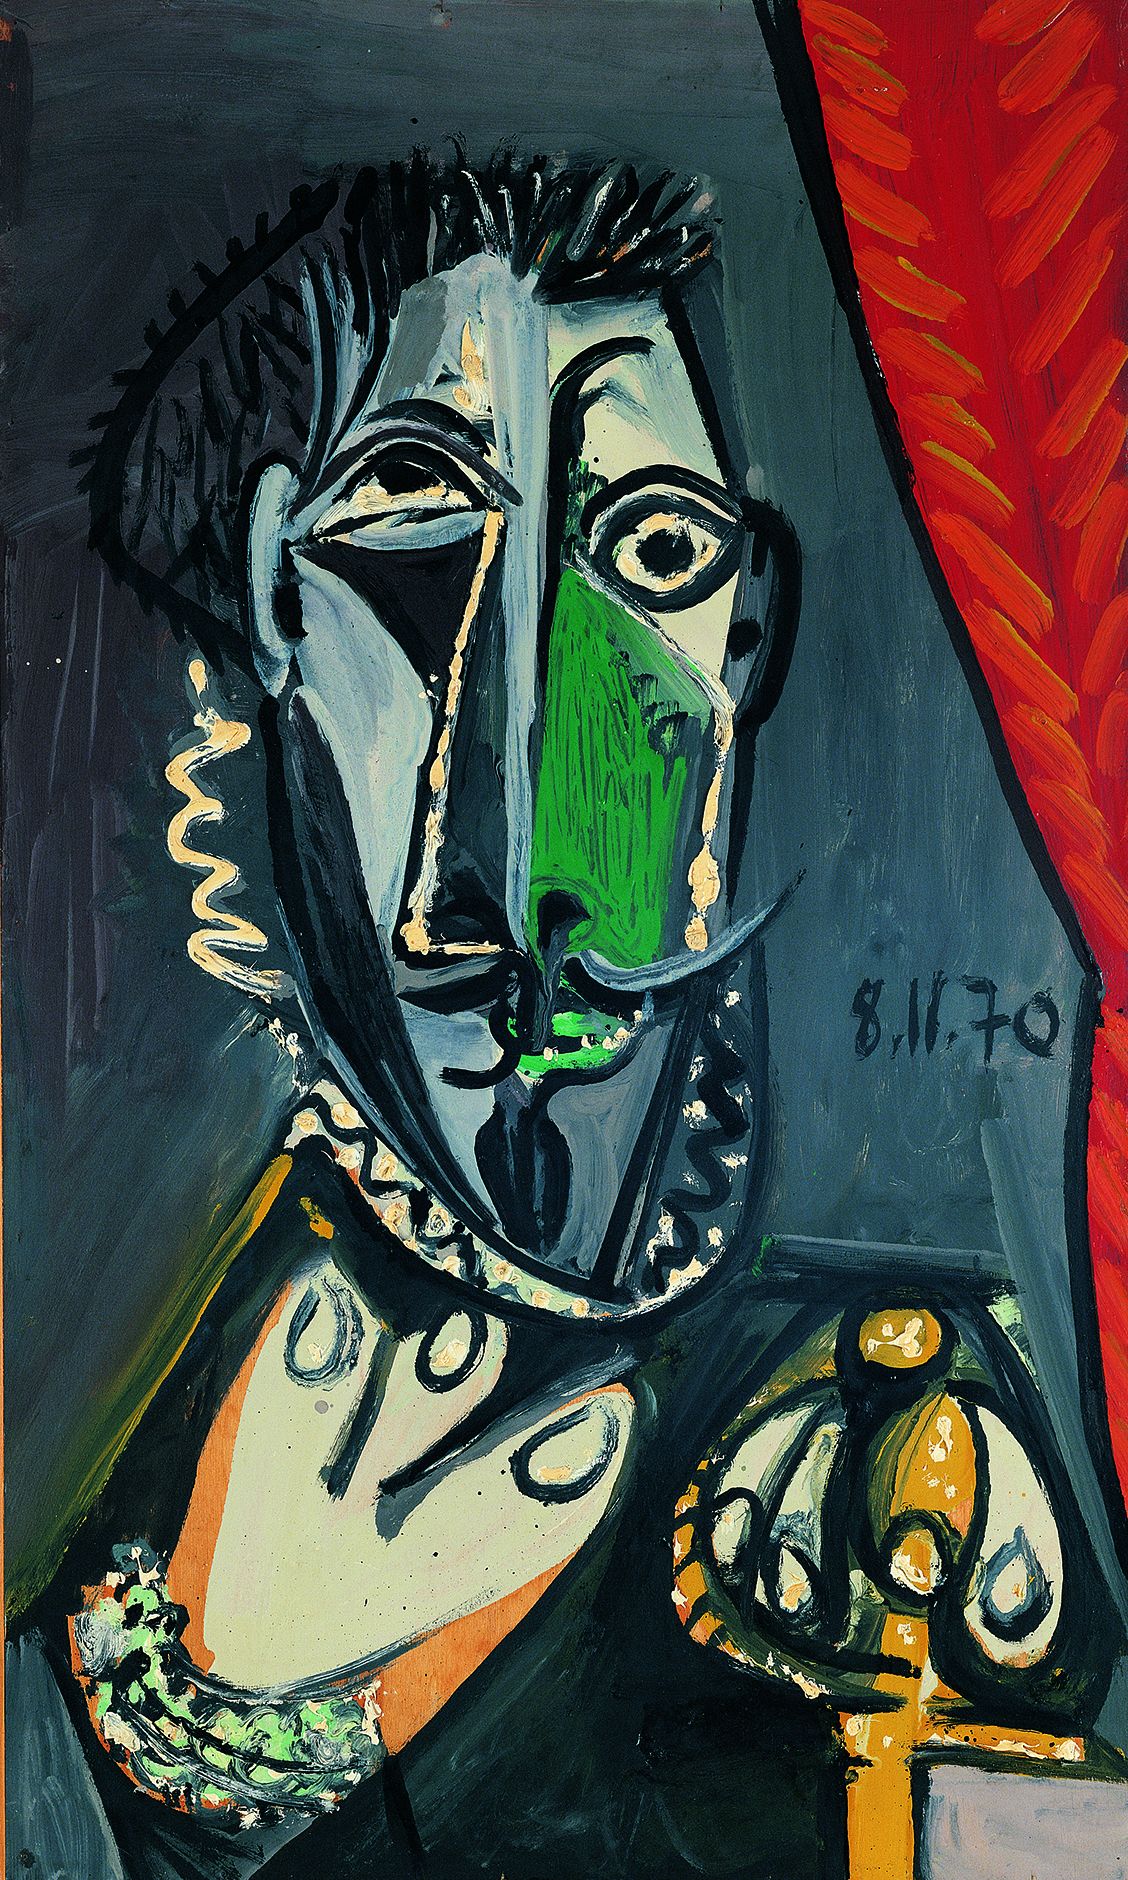 Pablo Picasso. Busto de hombre, Mougins, 1970. Fundación Almine y Bernard Ruiz-Picasso para el Arte. Sucesión Pablo Picasso, VEGAP, Madrid 2021 